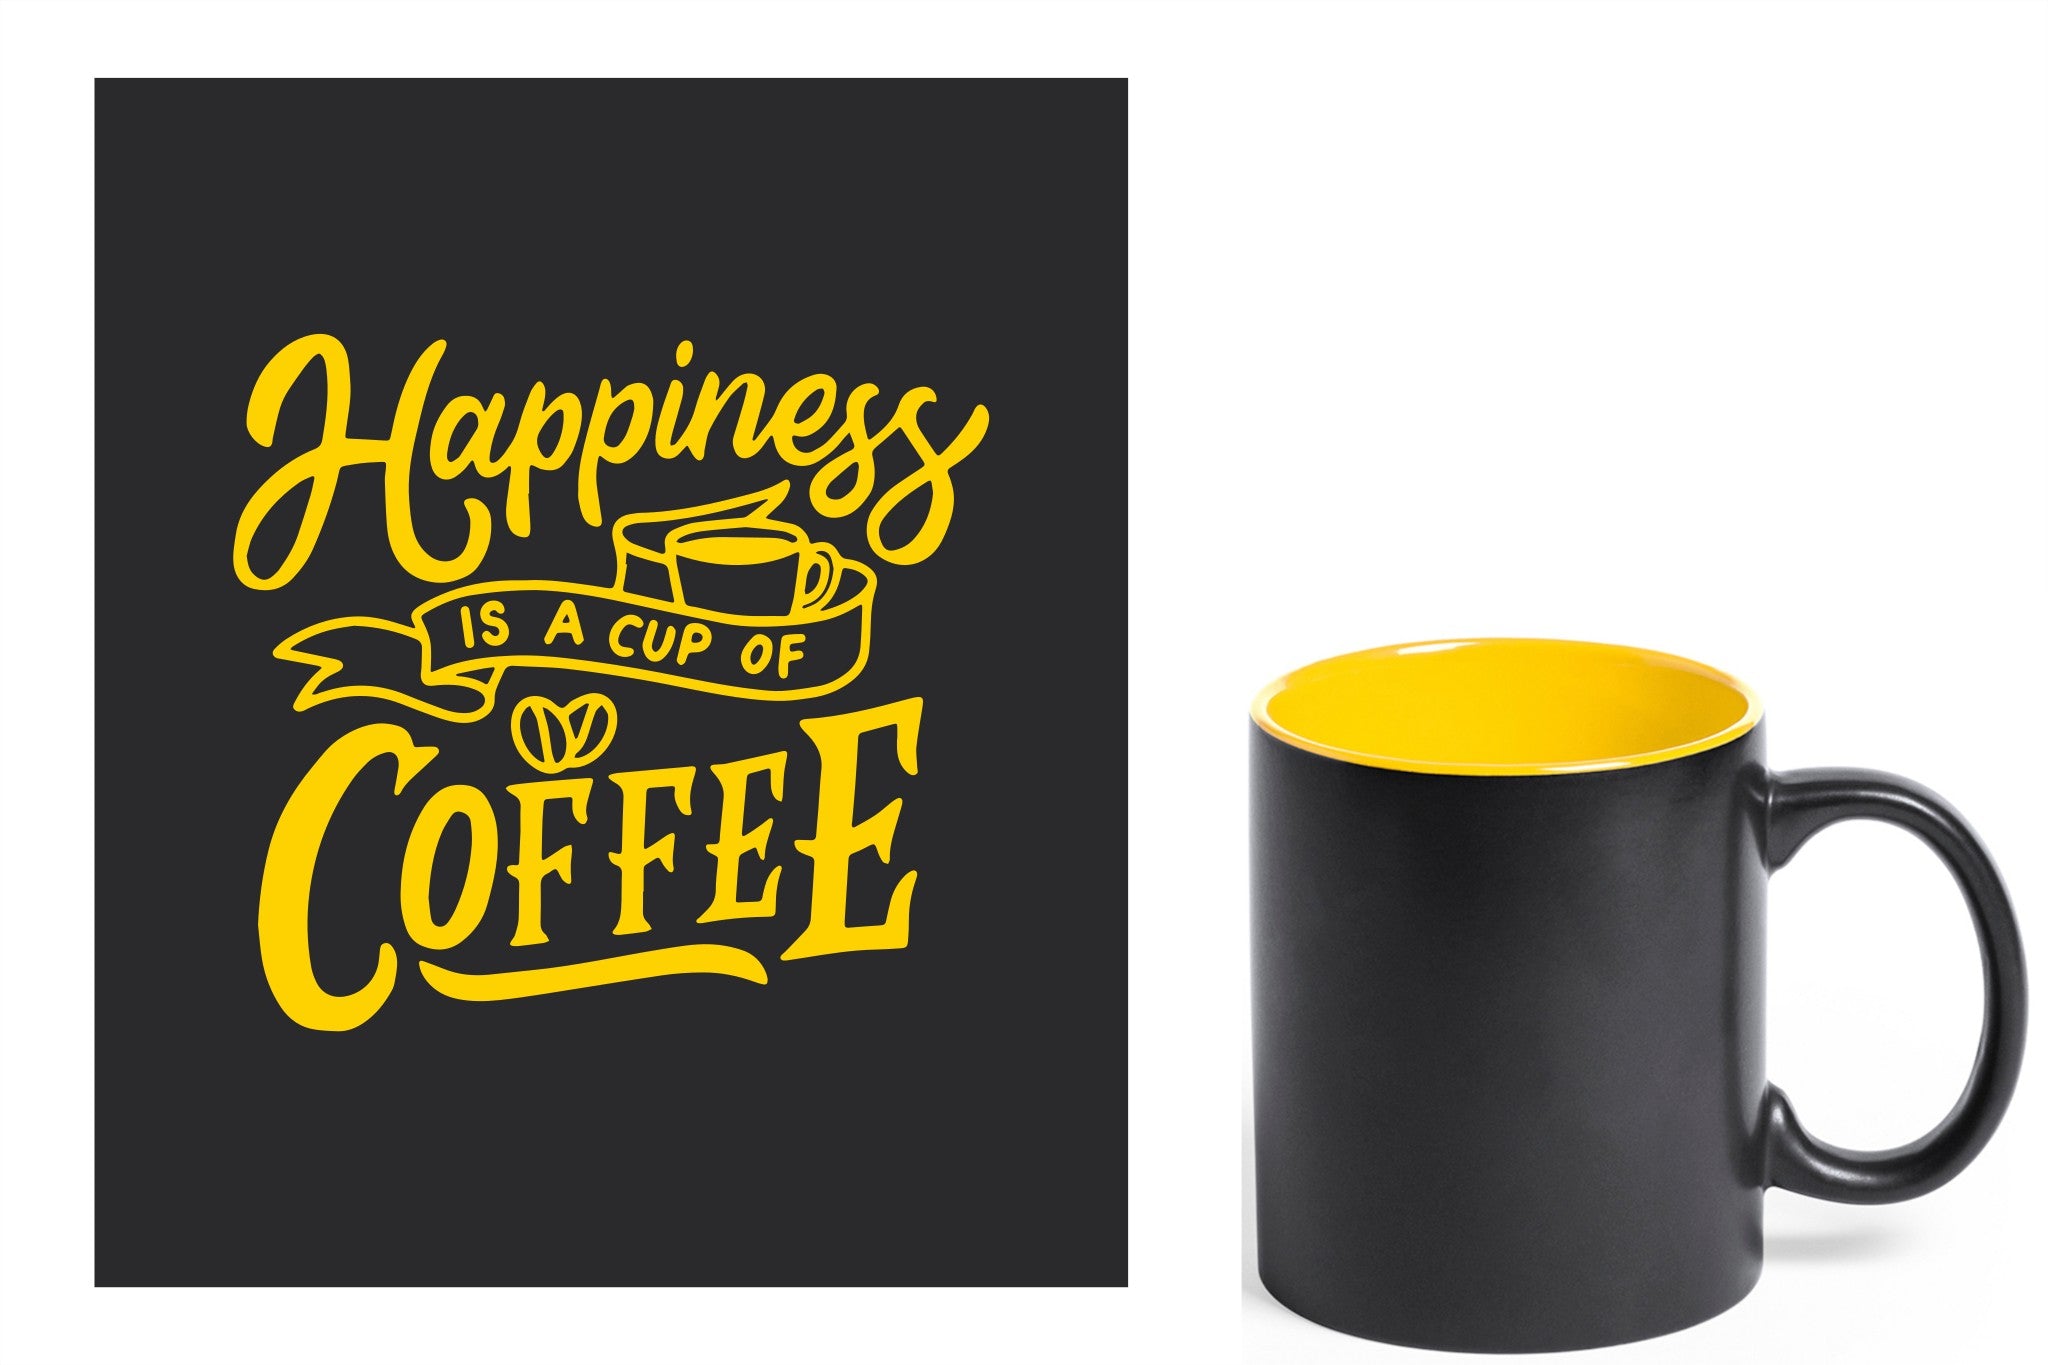 zwarte keramische mok met gele gravure  'Happiness is a cup of coffee'.